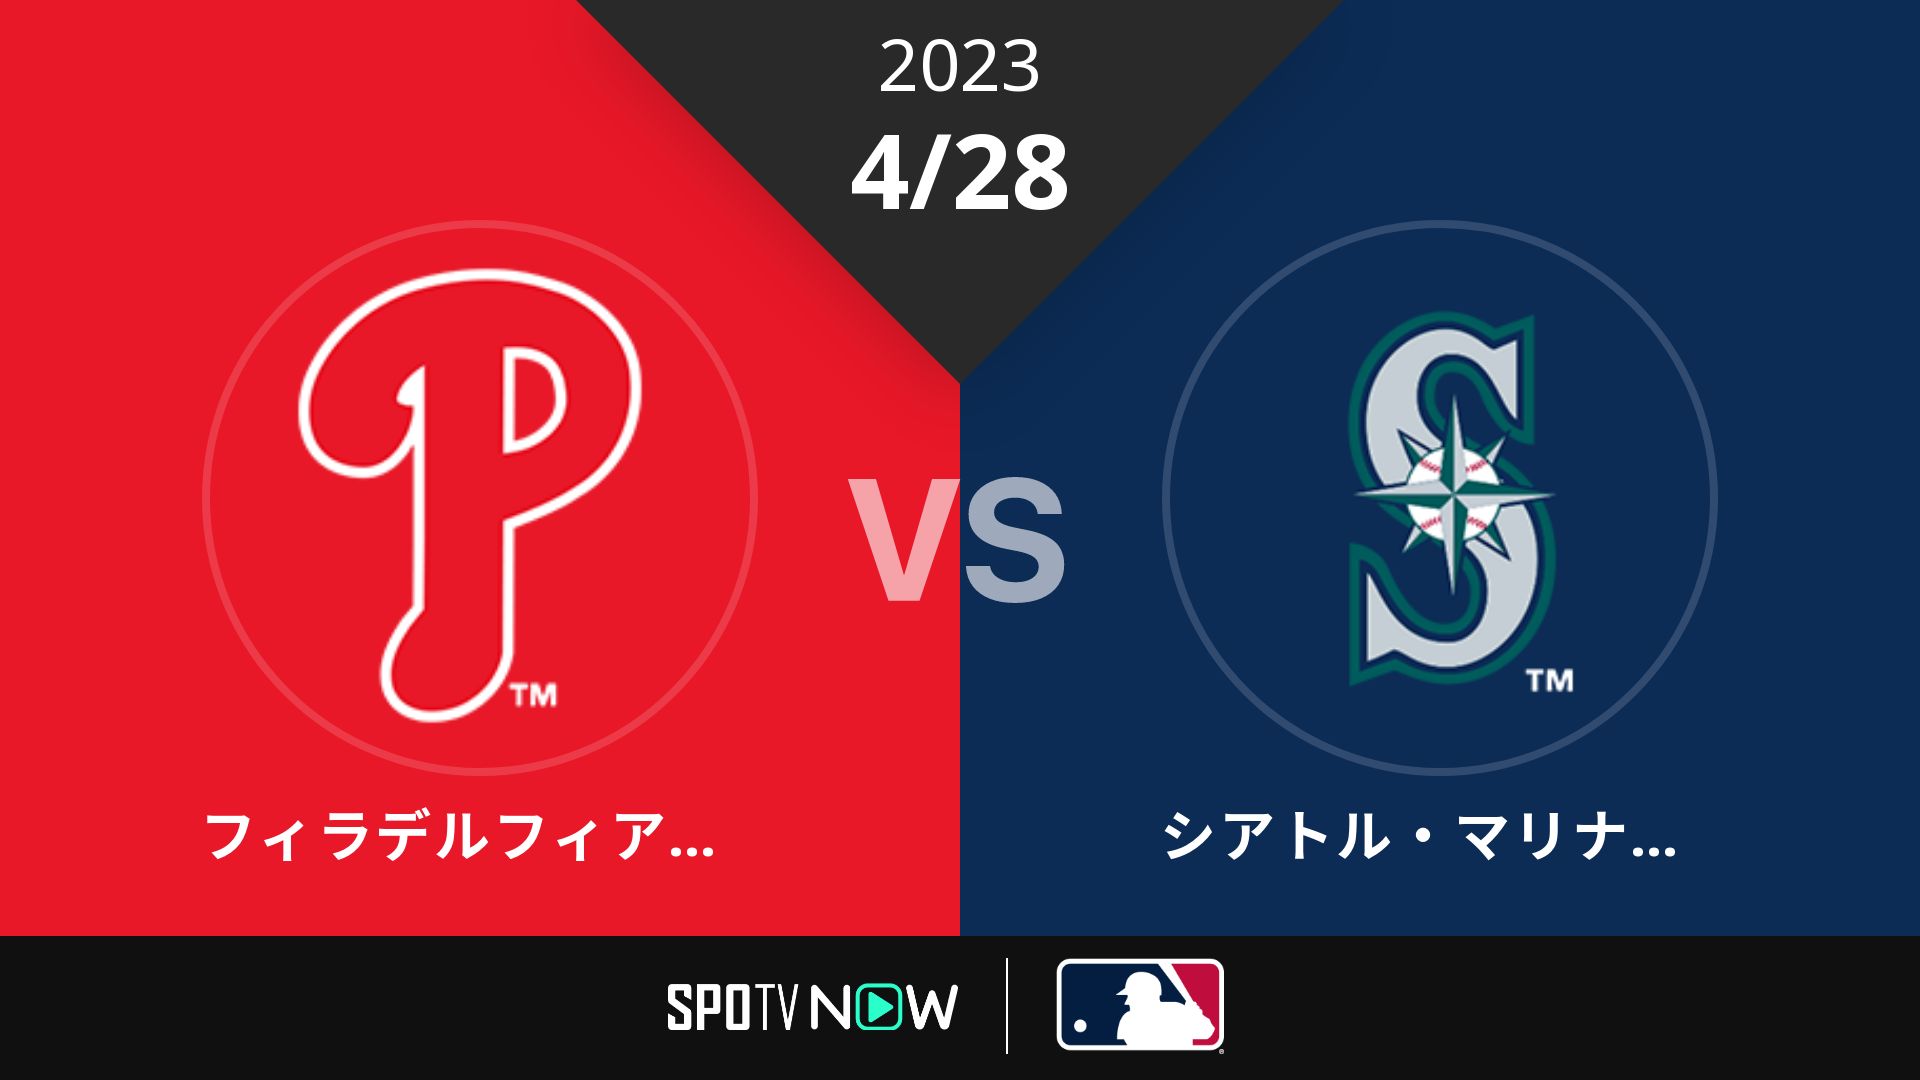 2023/4/28 フィリーズ vs マリナーズ [MLB]